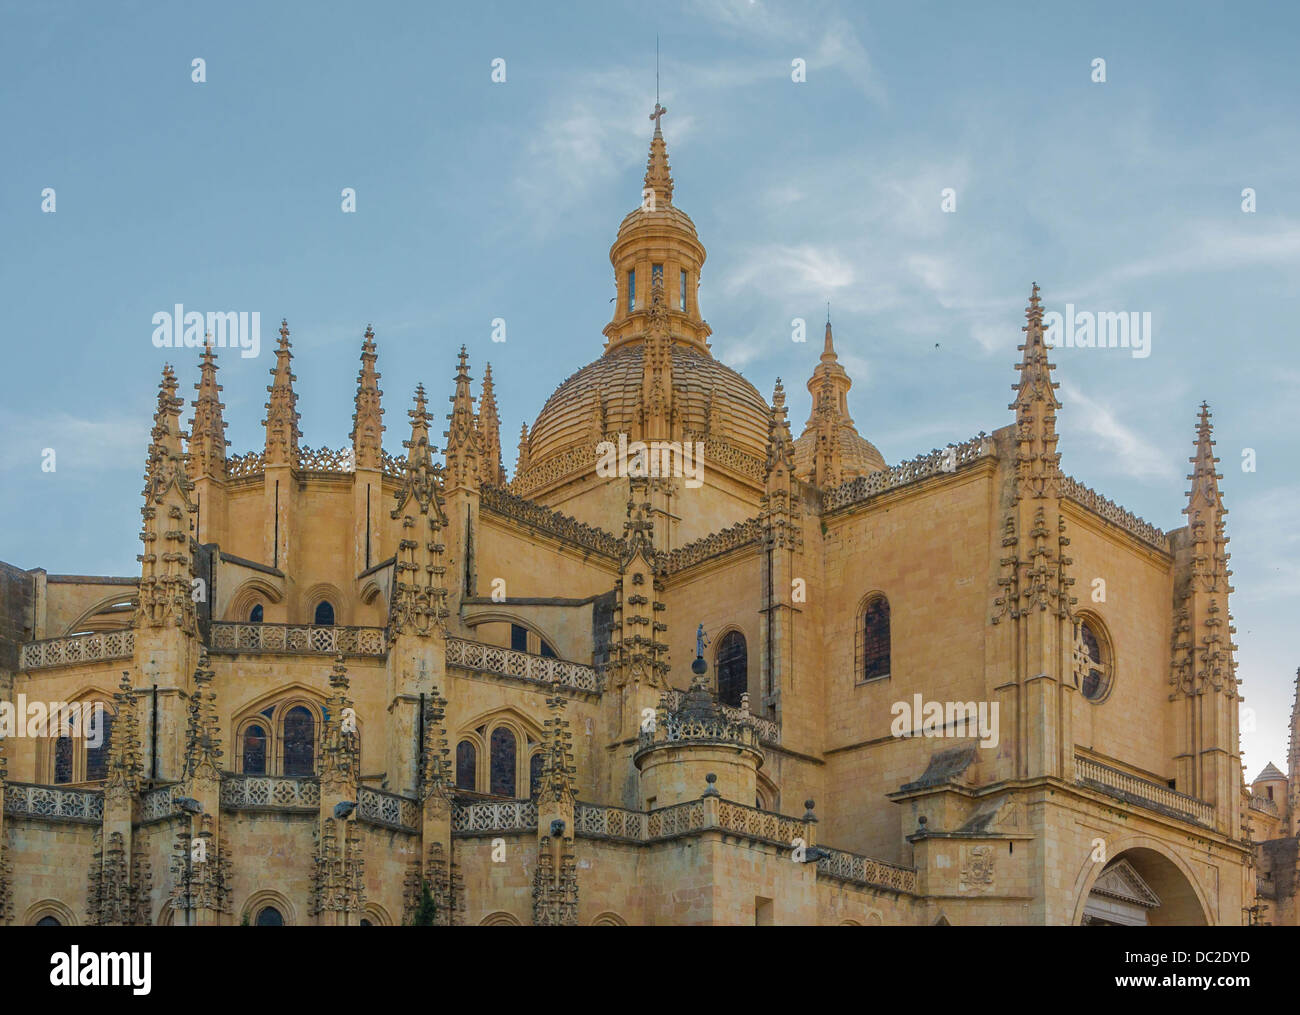 Dettaglio della parte posteriore della cattedrale di Segovia, in Spagna. Foto Stock